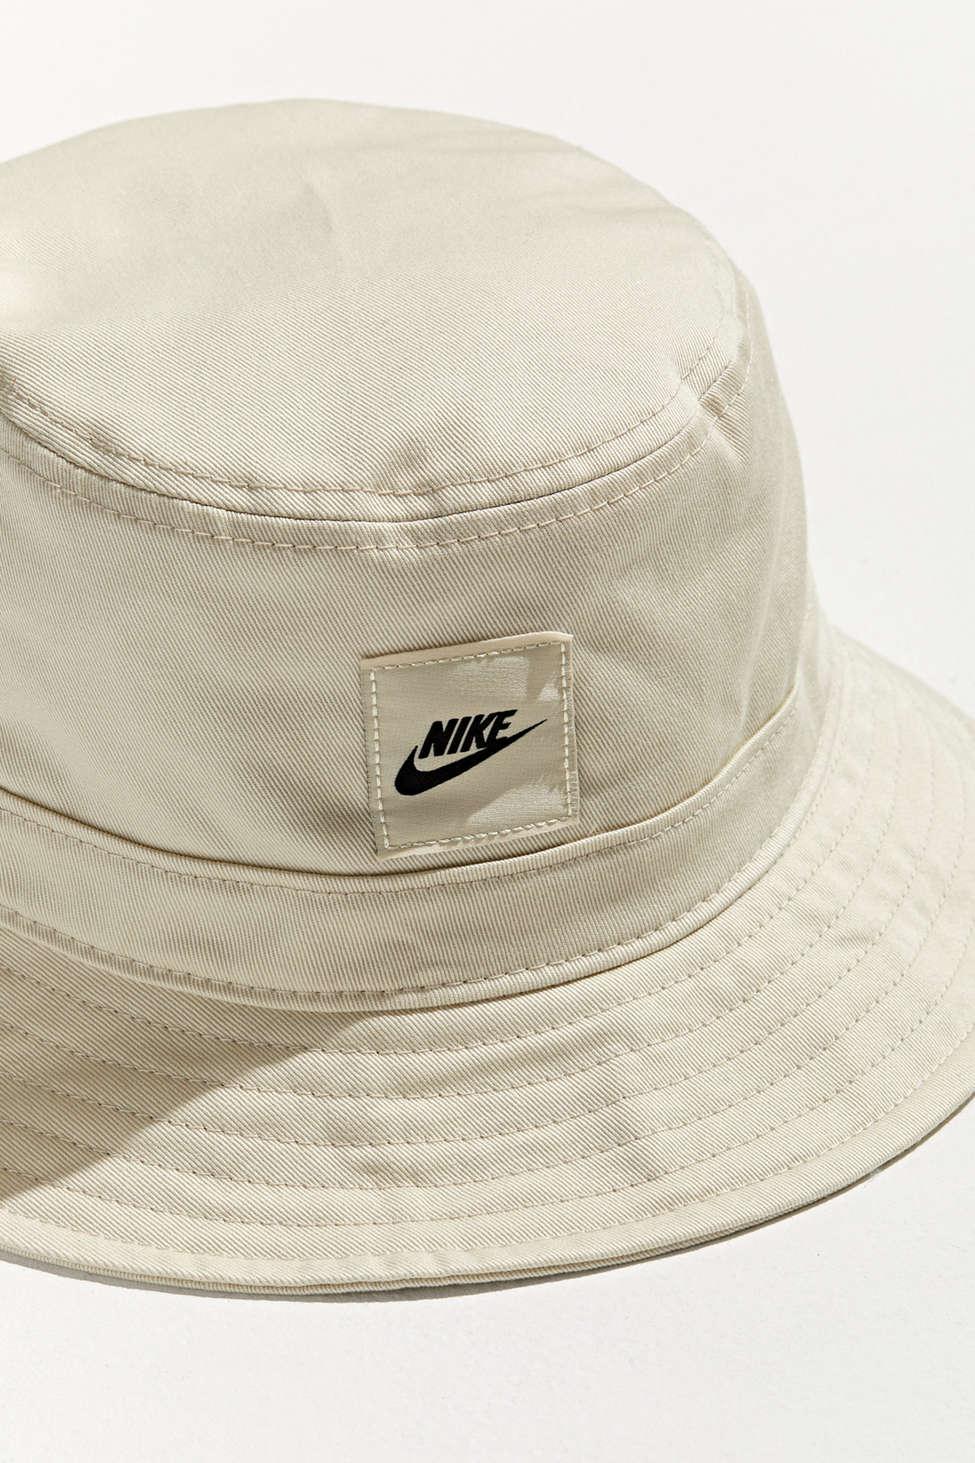 Nike Sportswear Core Bucket Hat in Cream (Natural) for Men - Lyst